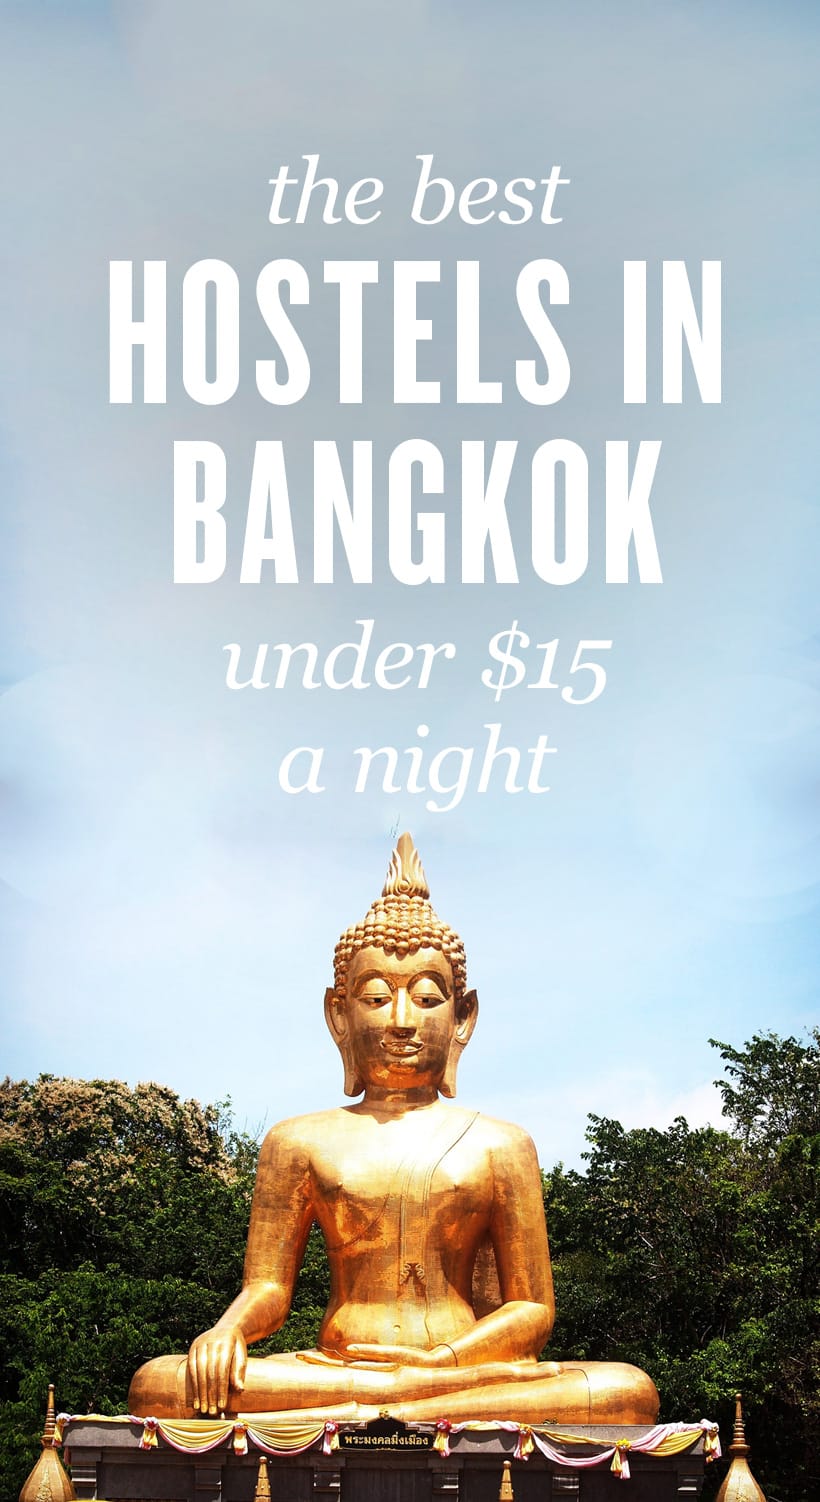 Daftar utama hostel terbaik di Bangkok, Thailand